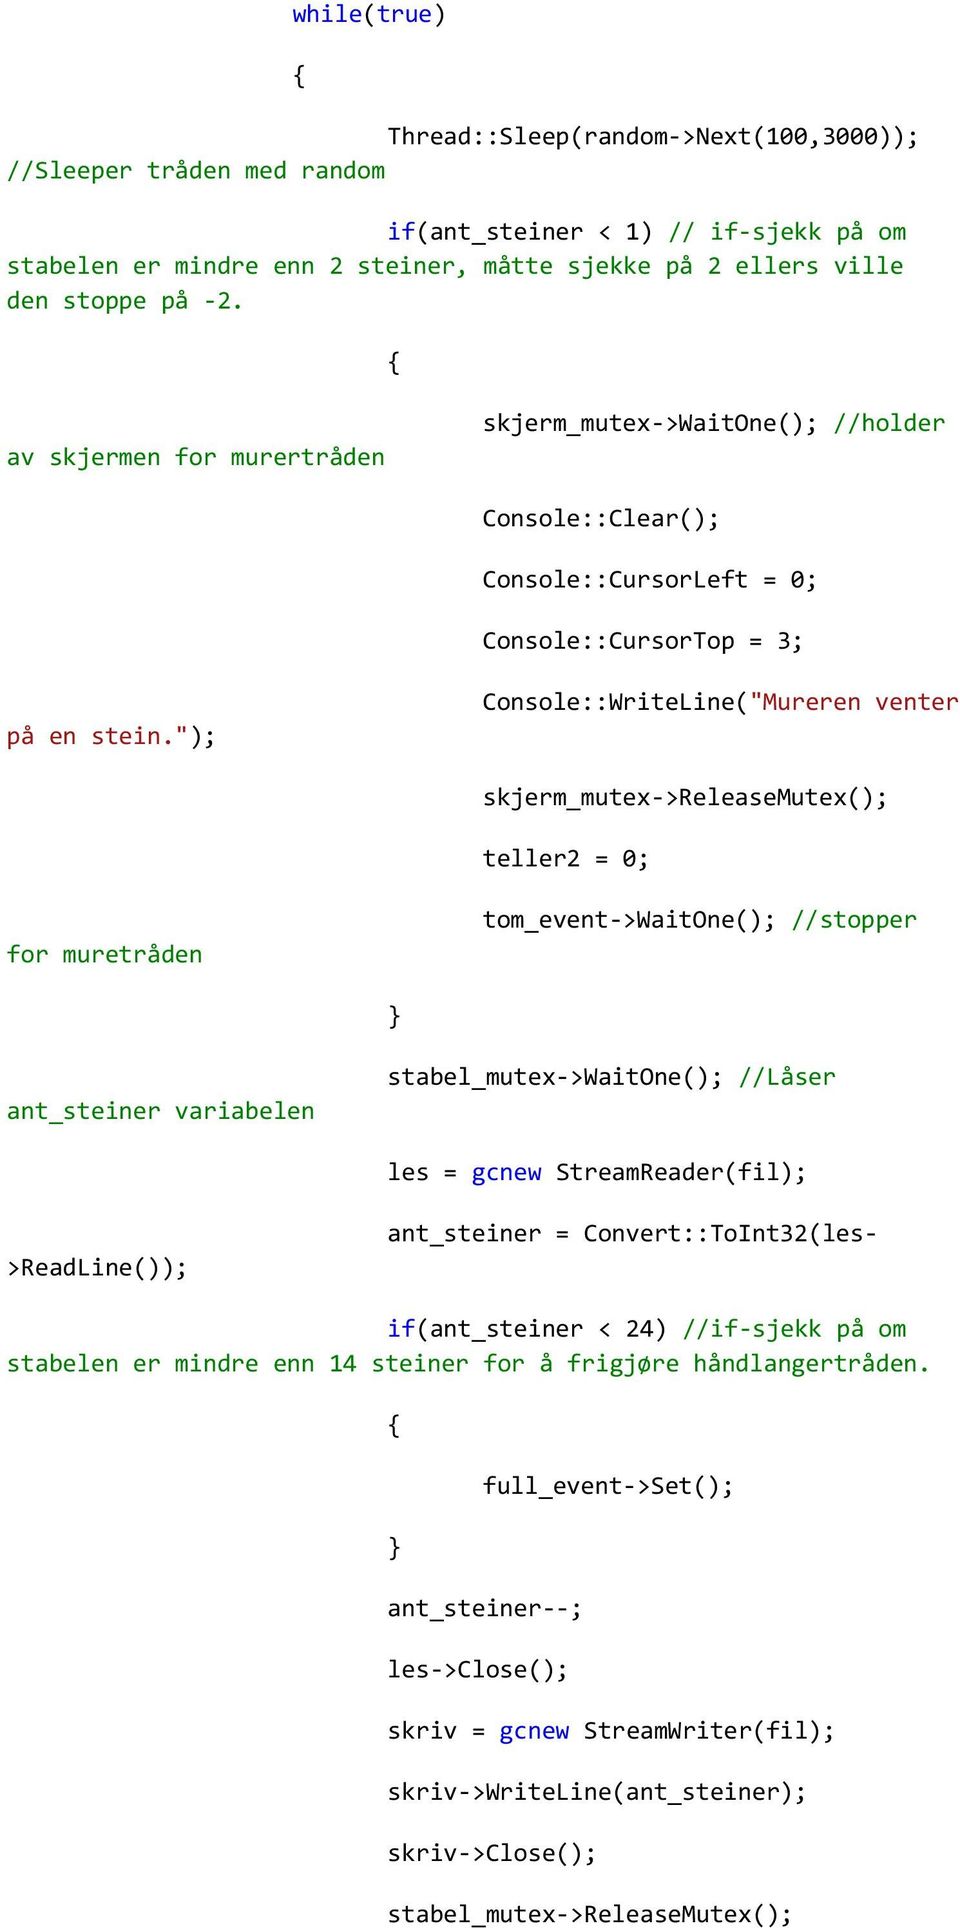 "); Console::WriteLine("Mureren venter skjerm_mutex->releasemutex(); teller2 = 0; for muretråden tom_event->waitone(); //stopper ant_steiner variabelen stabel_mutex->waitone(); //Låser les = gcnew